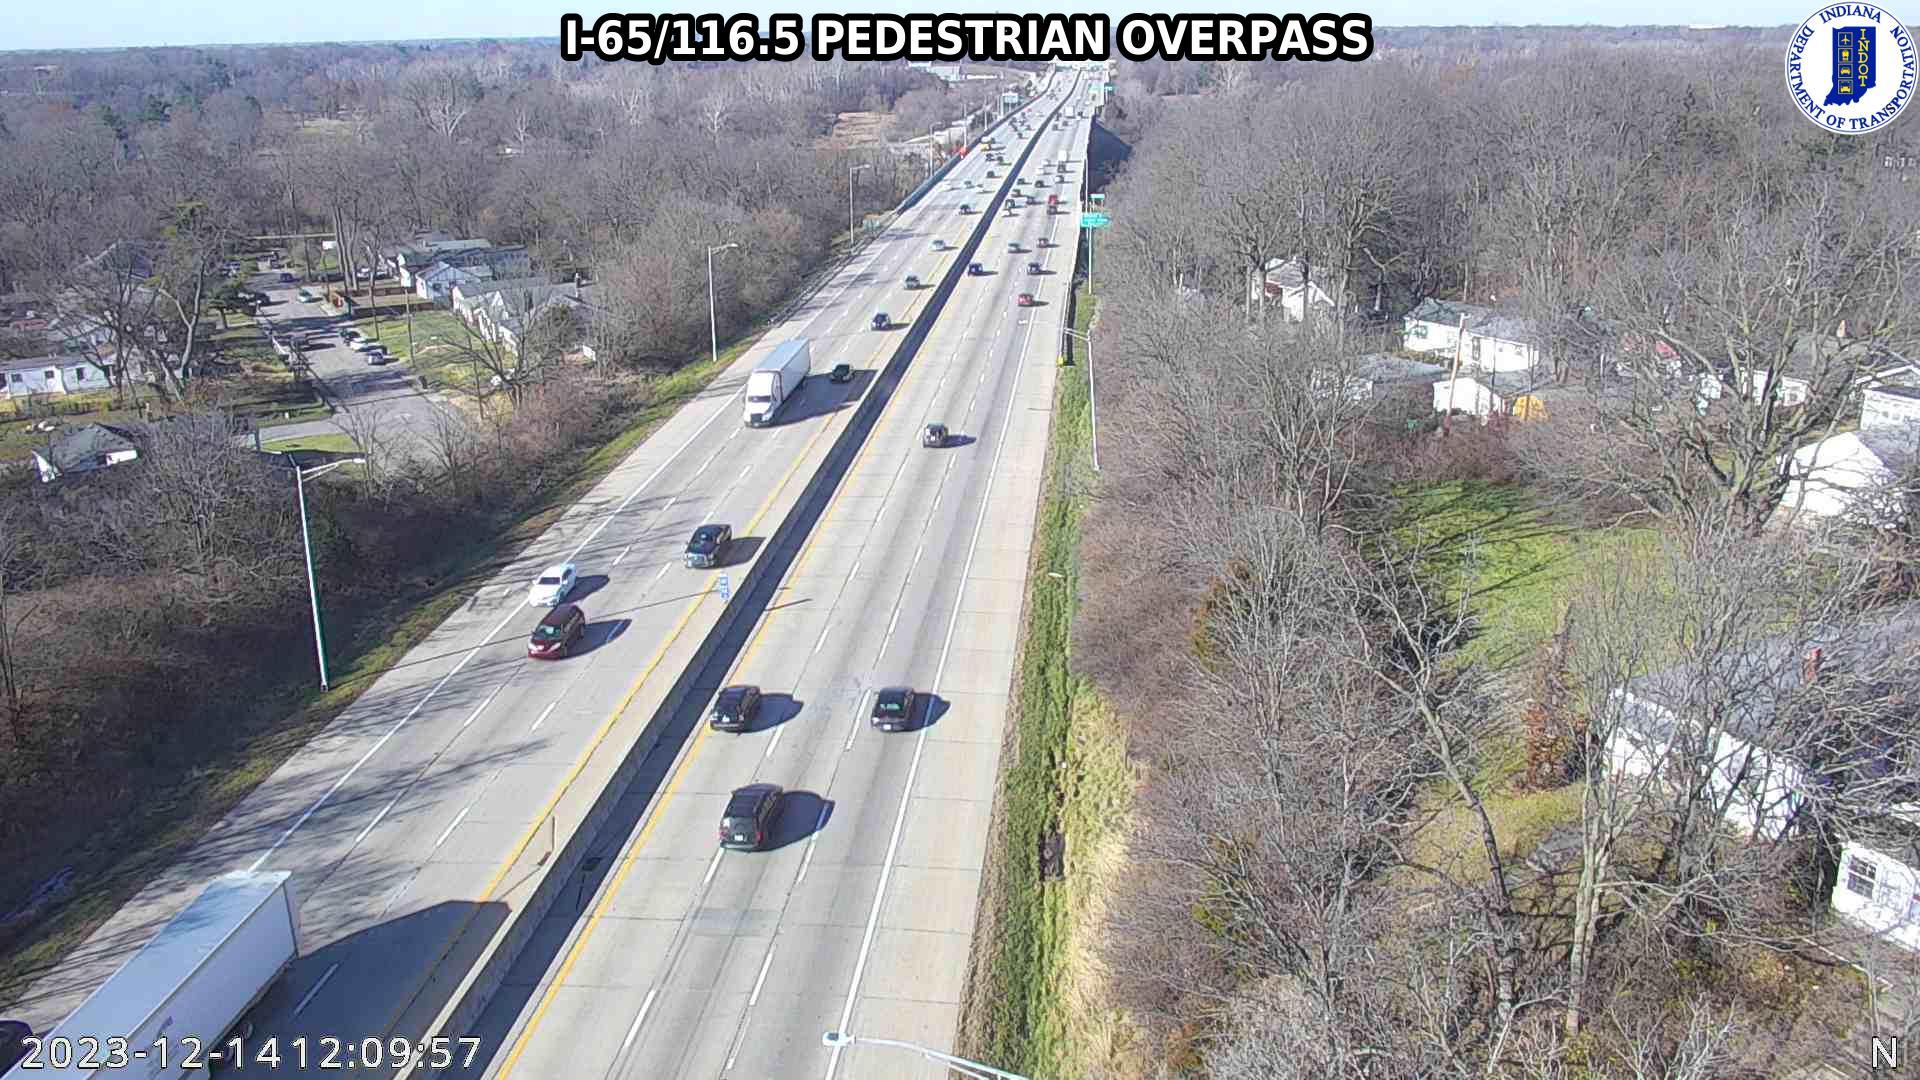 Traffic Cam Clifton: I-65: I-65/116.5 PEDESTRIAN OVERPASS Player